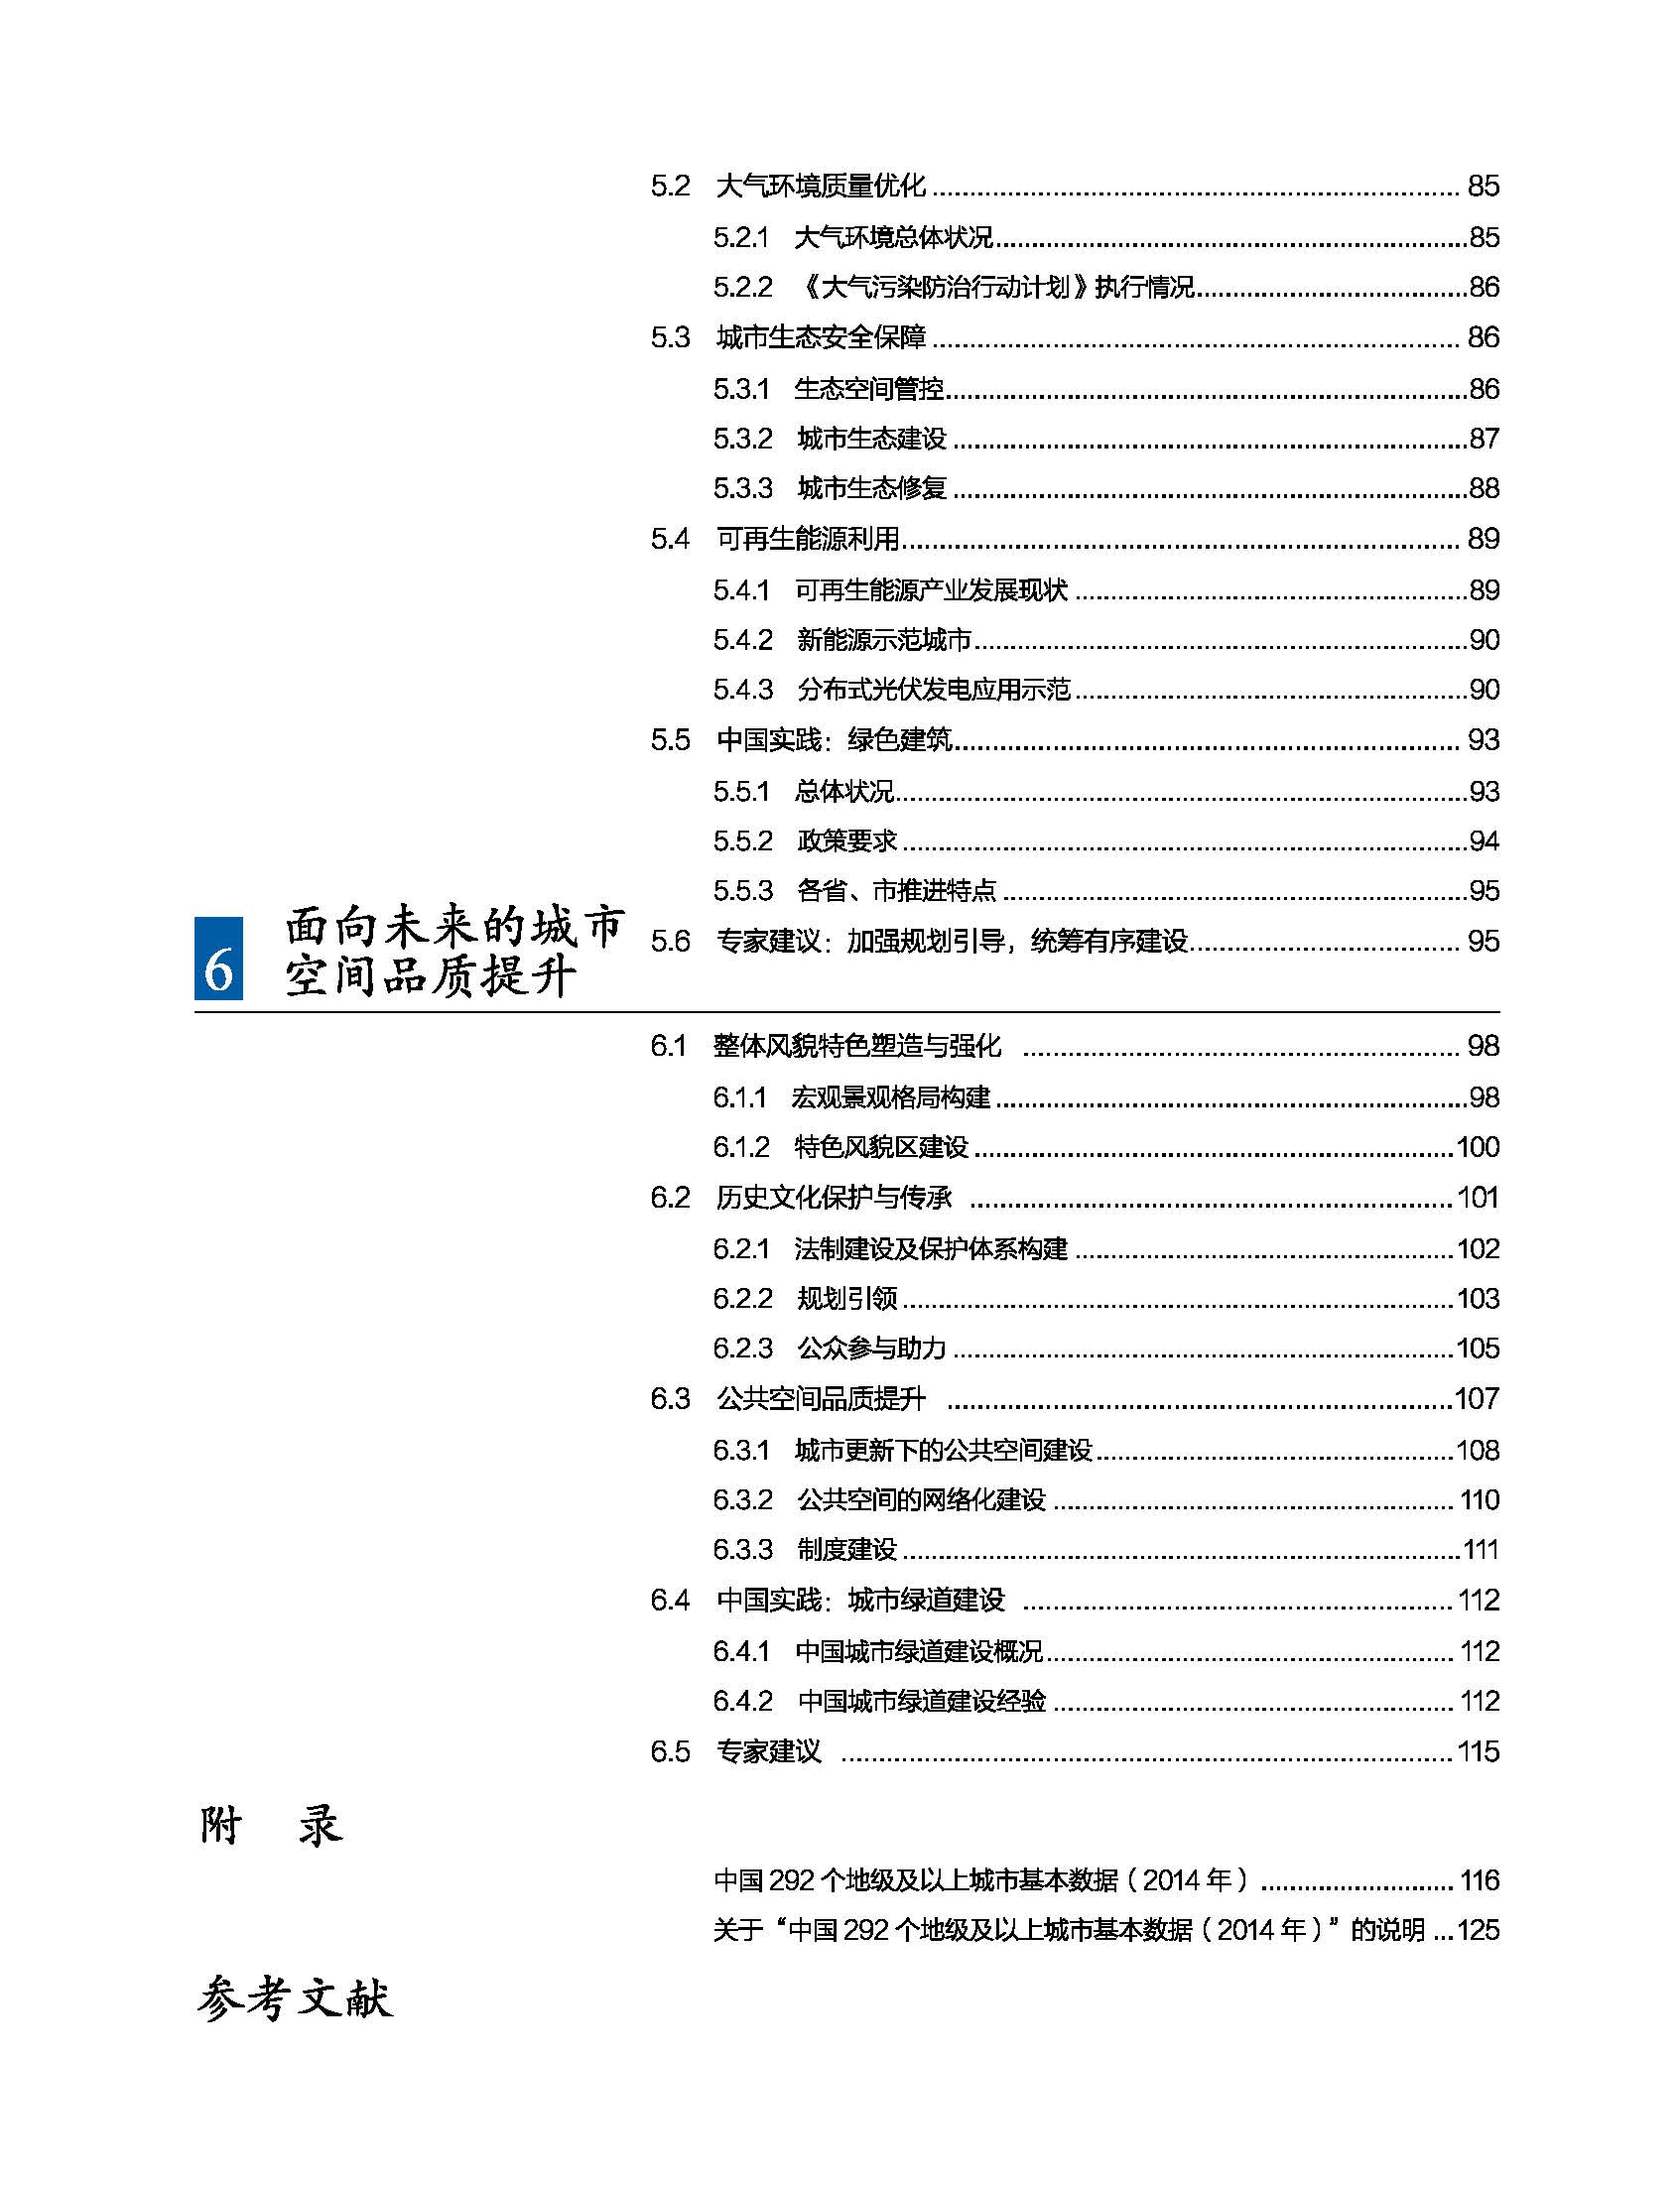 状况报告2016-2017中文 11.jpg